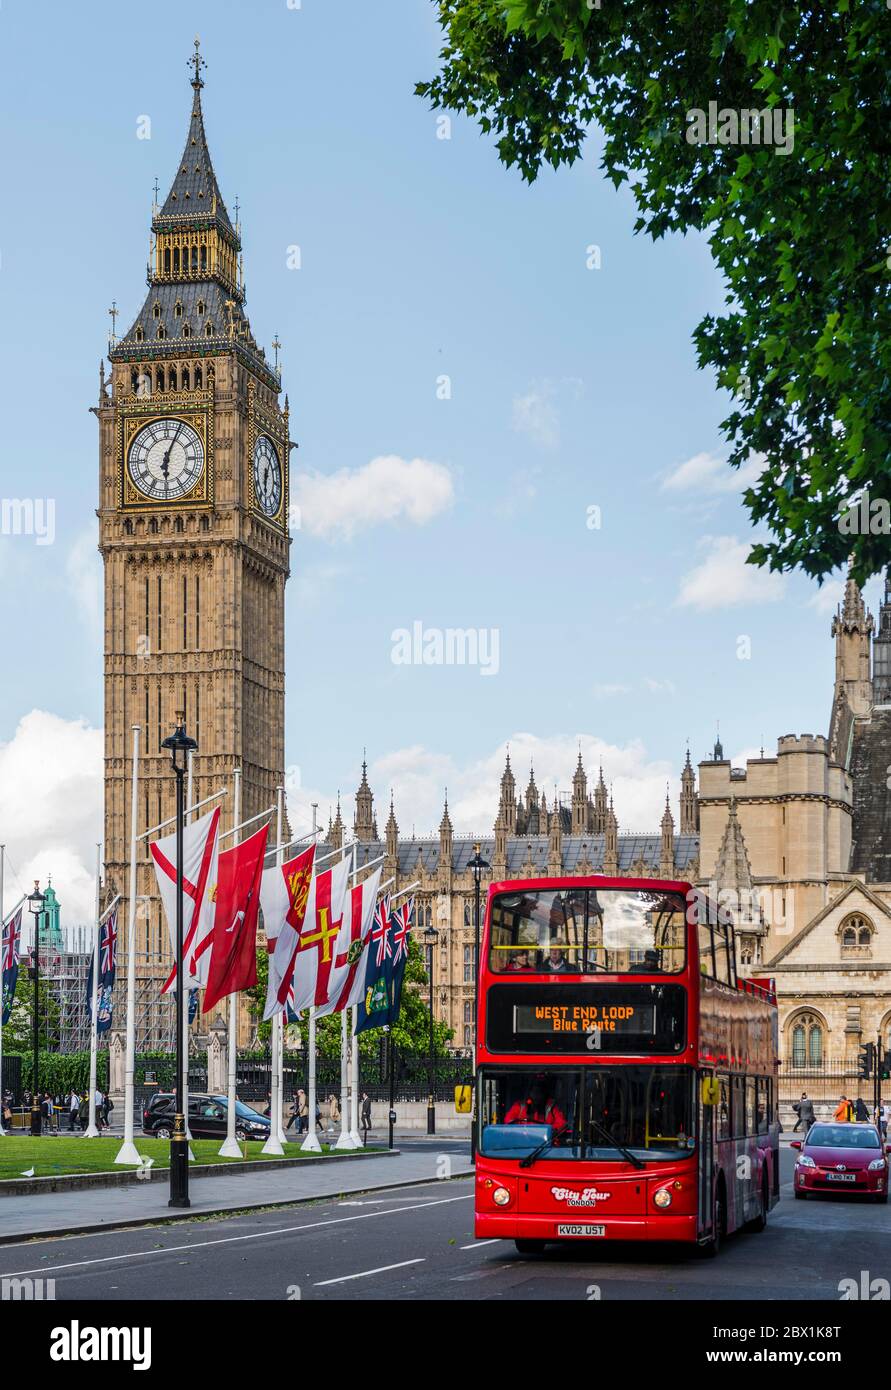 Red Double Decker bus, Palais de Westminster, chambres du Parlement, Big Ben, Cité de Westminster, Londres, Angleterre, Royaume-Uni Banque D'Images